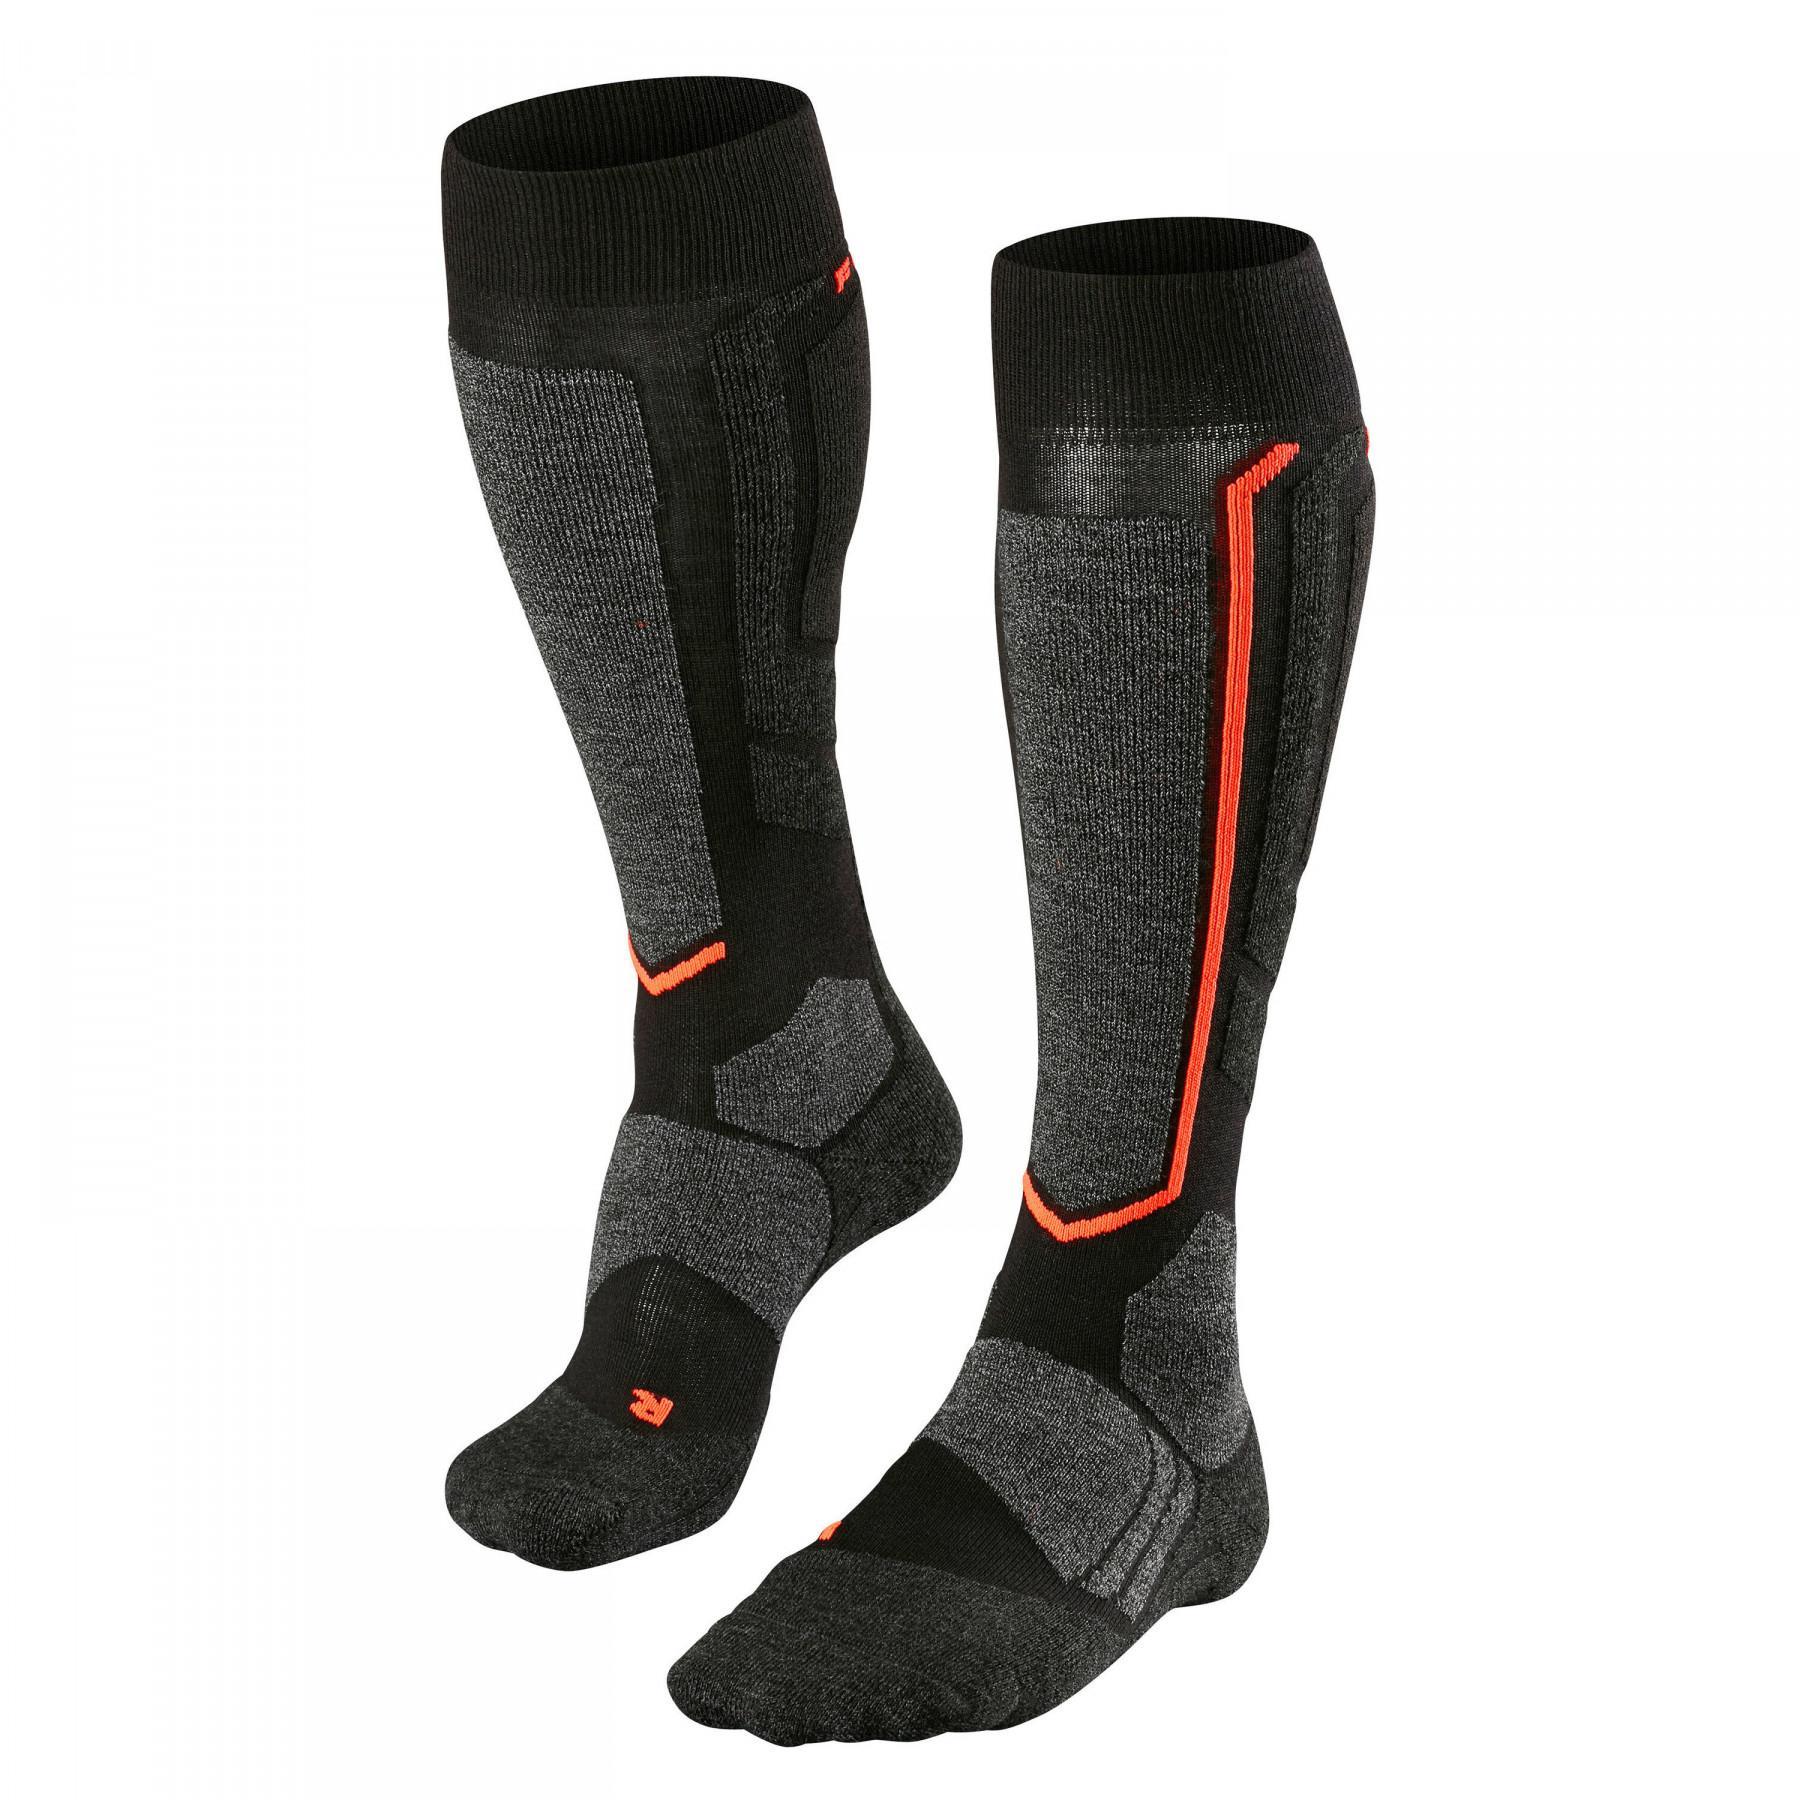 Knee-high socks Falke SB2